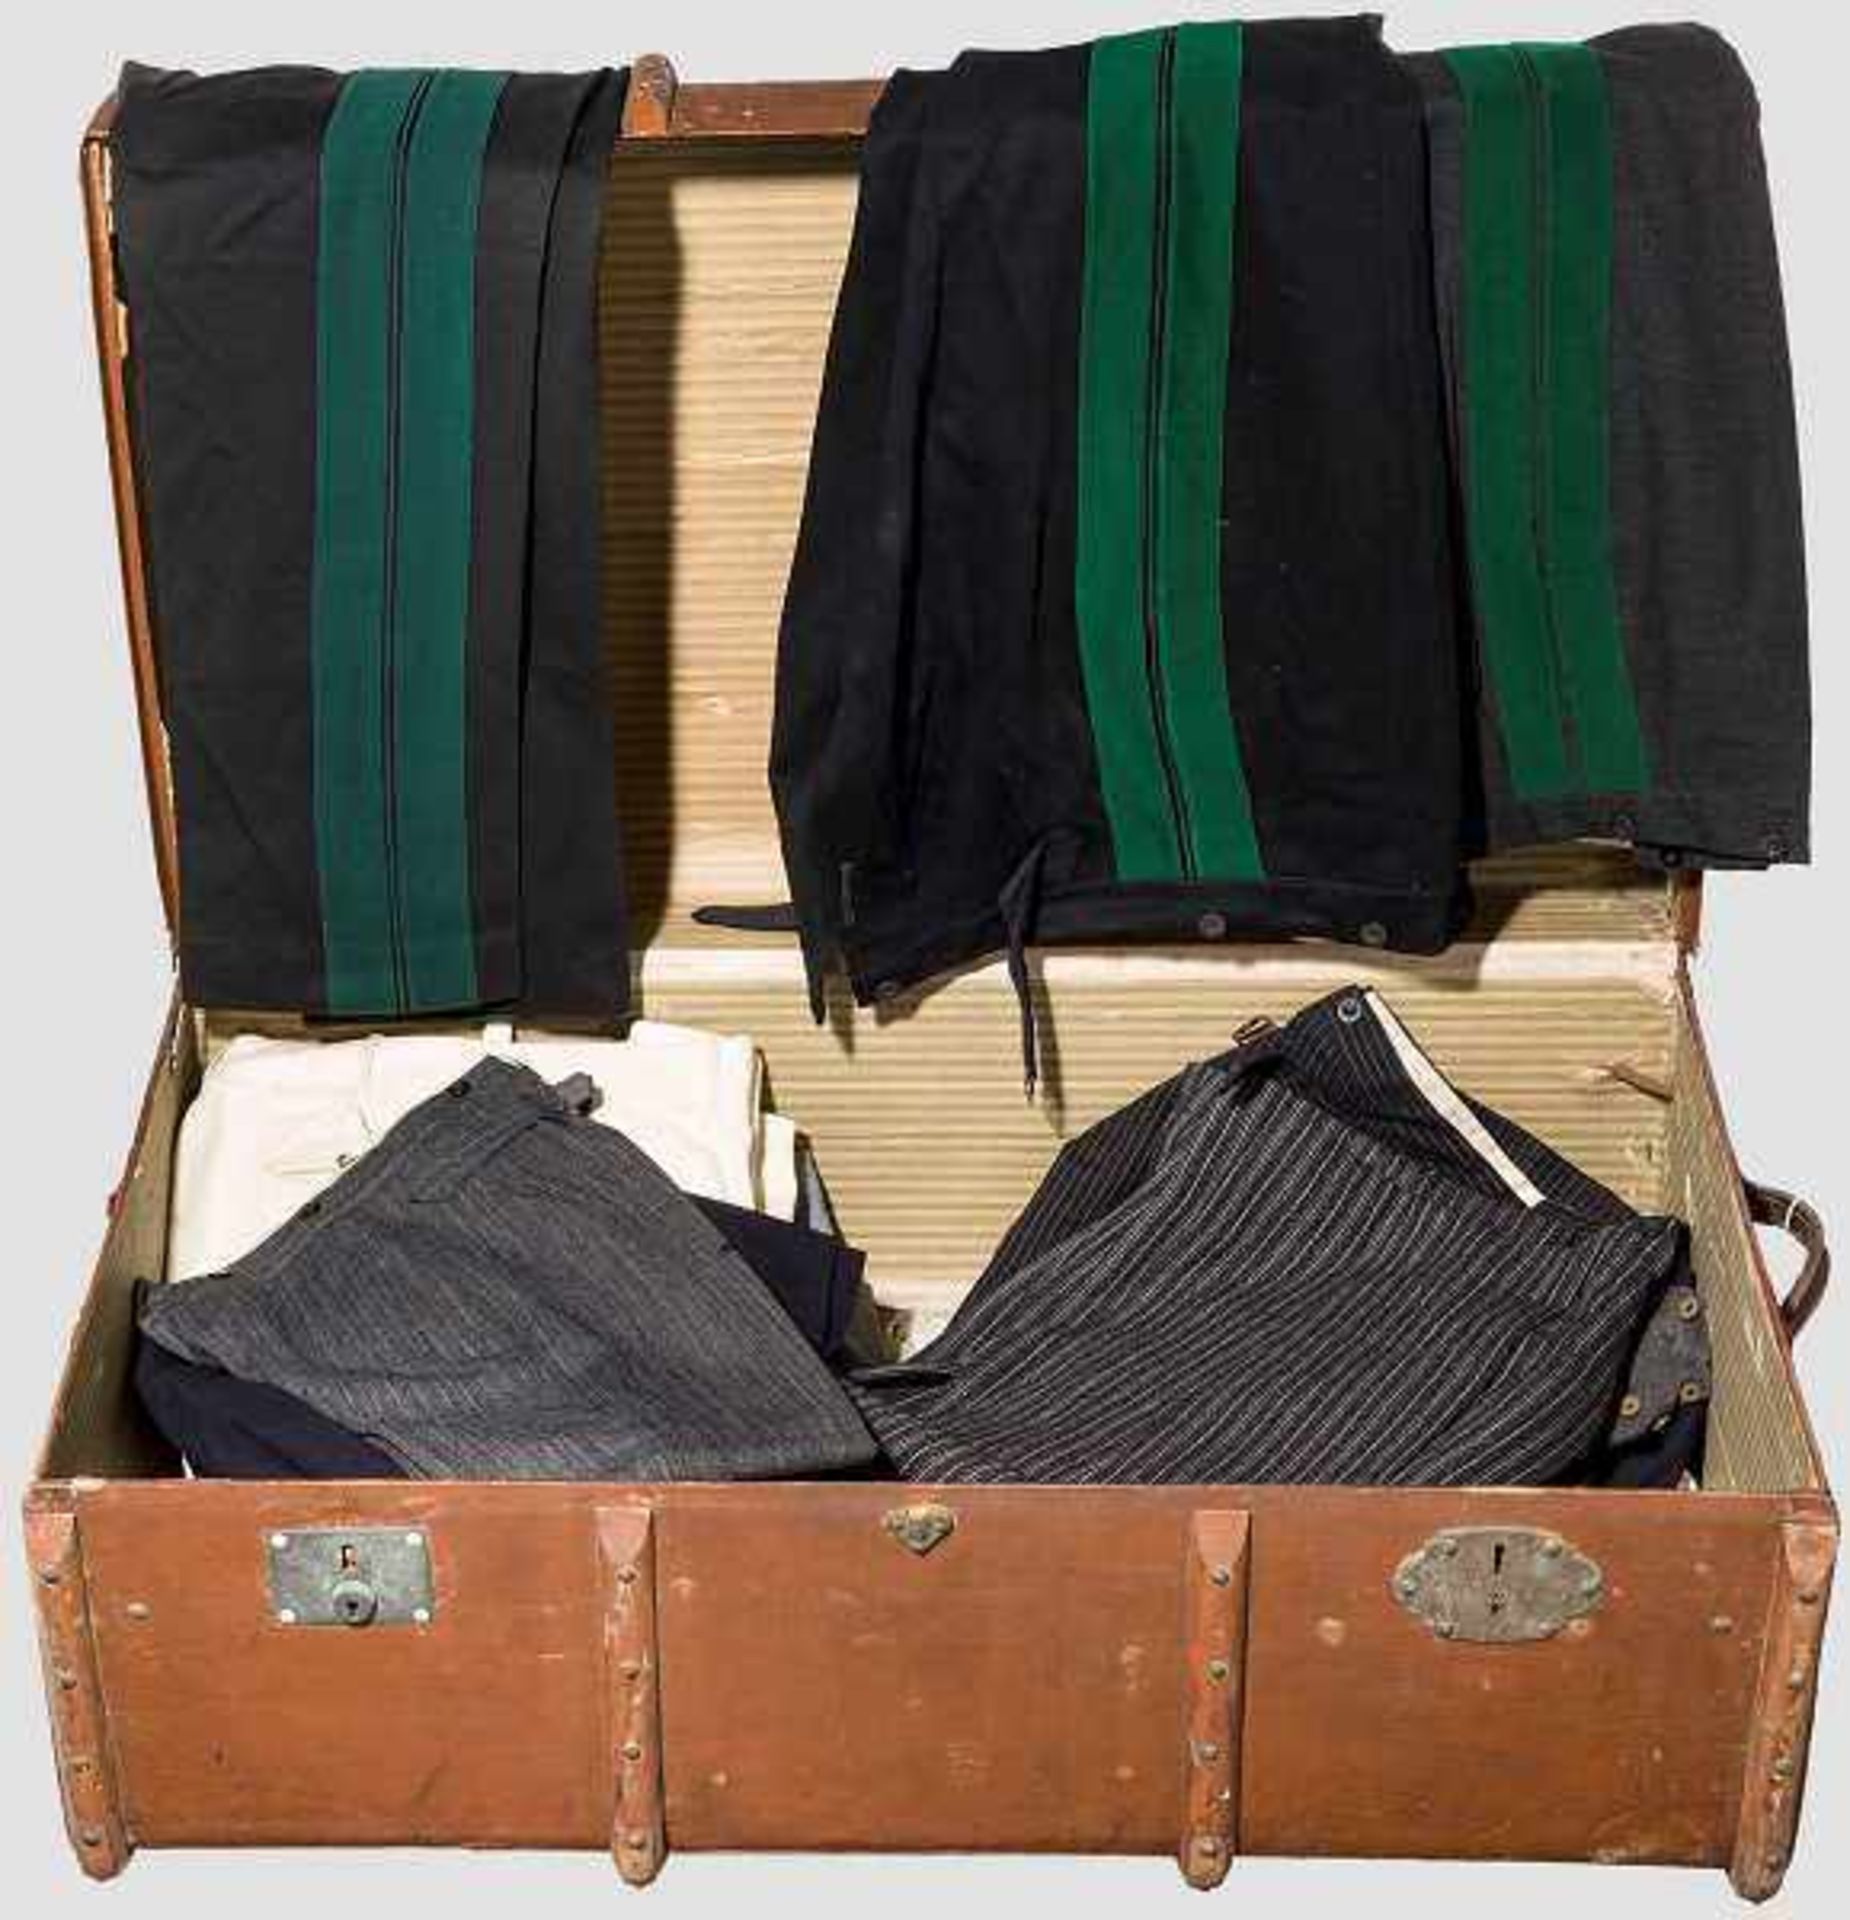 Königliches Haus Hannover - Kleiderkoffer, 20. Jhdt. Zwei dunkle Uniformhosen mit breiten, grünen